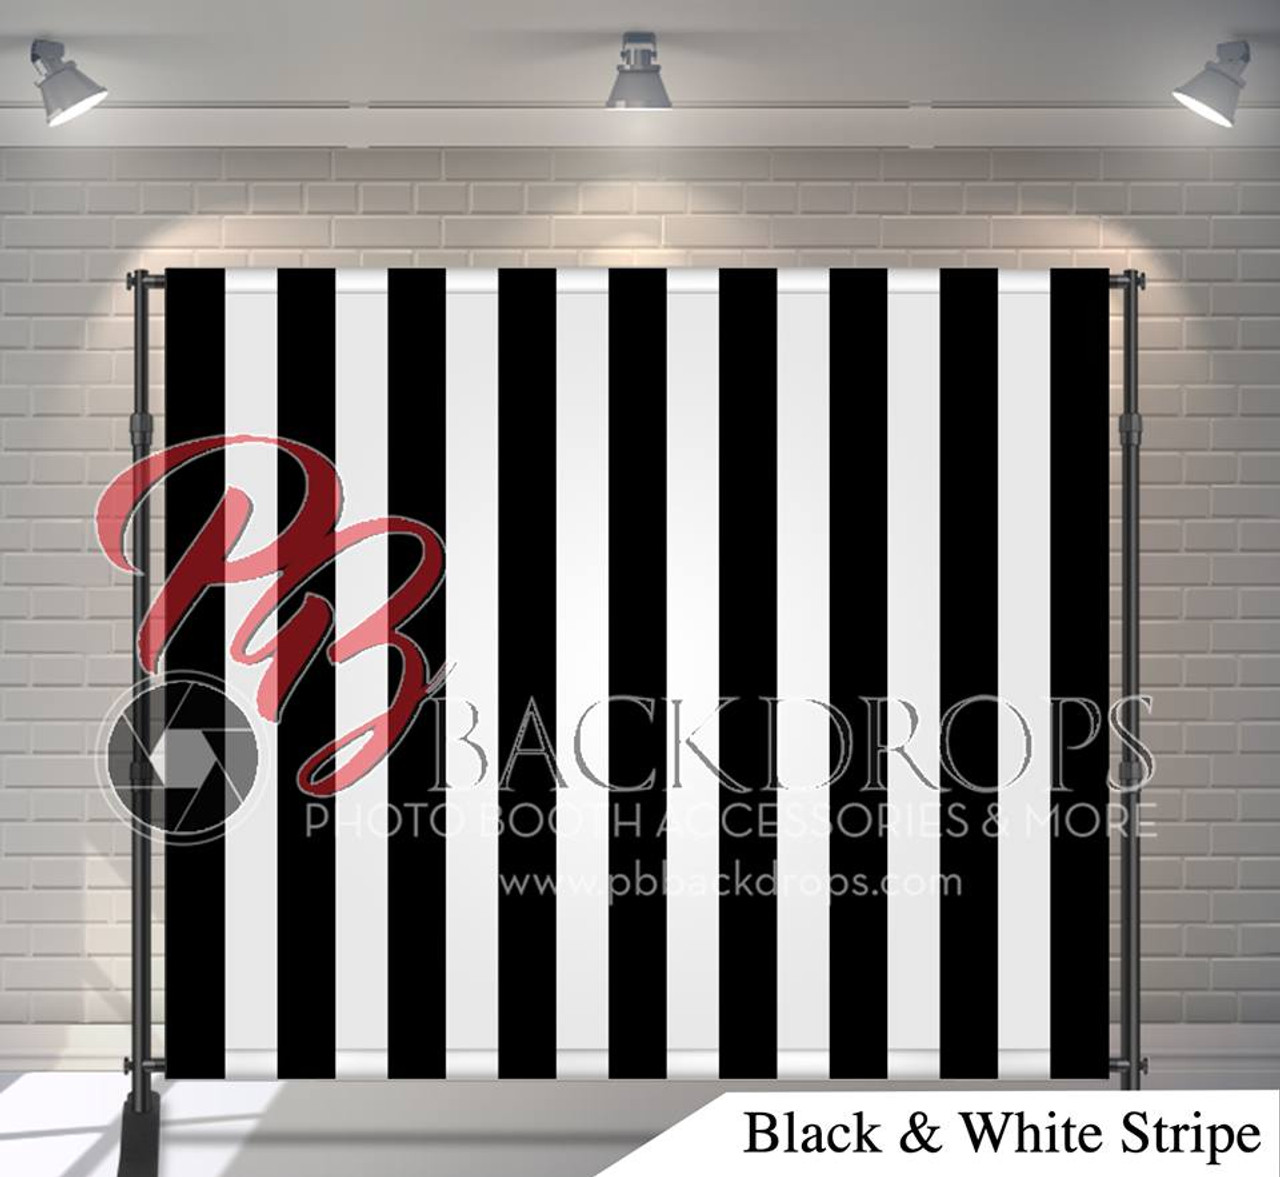 Black and White Stripes: Sự kết hợp giữa màu đen và trắng đã luôn là sự lựa chọn tuyệt vời để đem lại cho bức ảnh của bạn một phong cách cổ điển và đẳng cấp. Hãy tìm kiếm những mẫu sọc đen trắng độc đáo và tự tạo ra một bức ảnh thật ấn tượng.